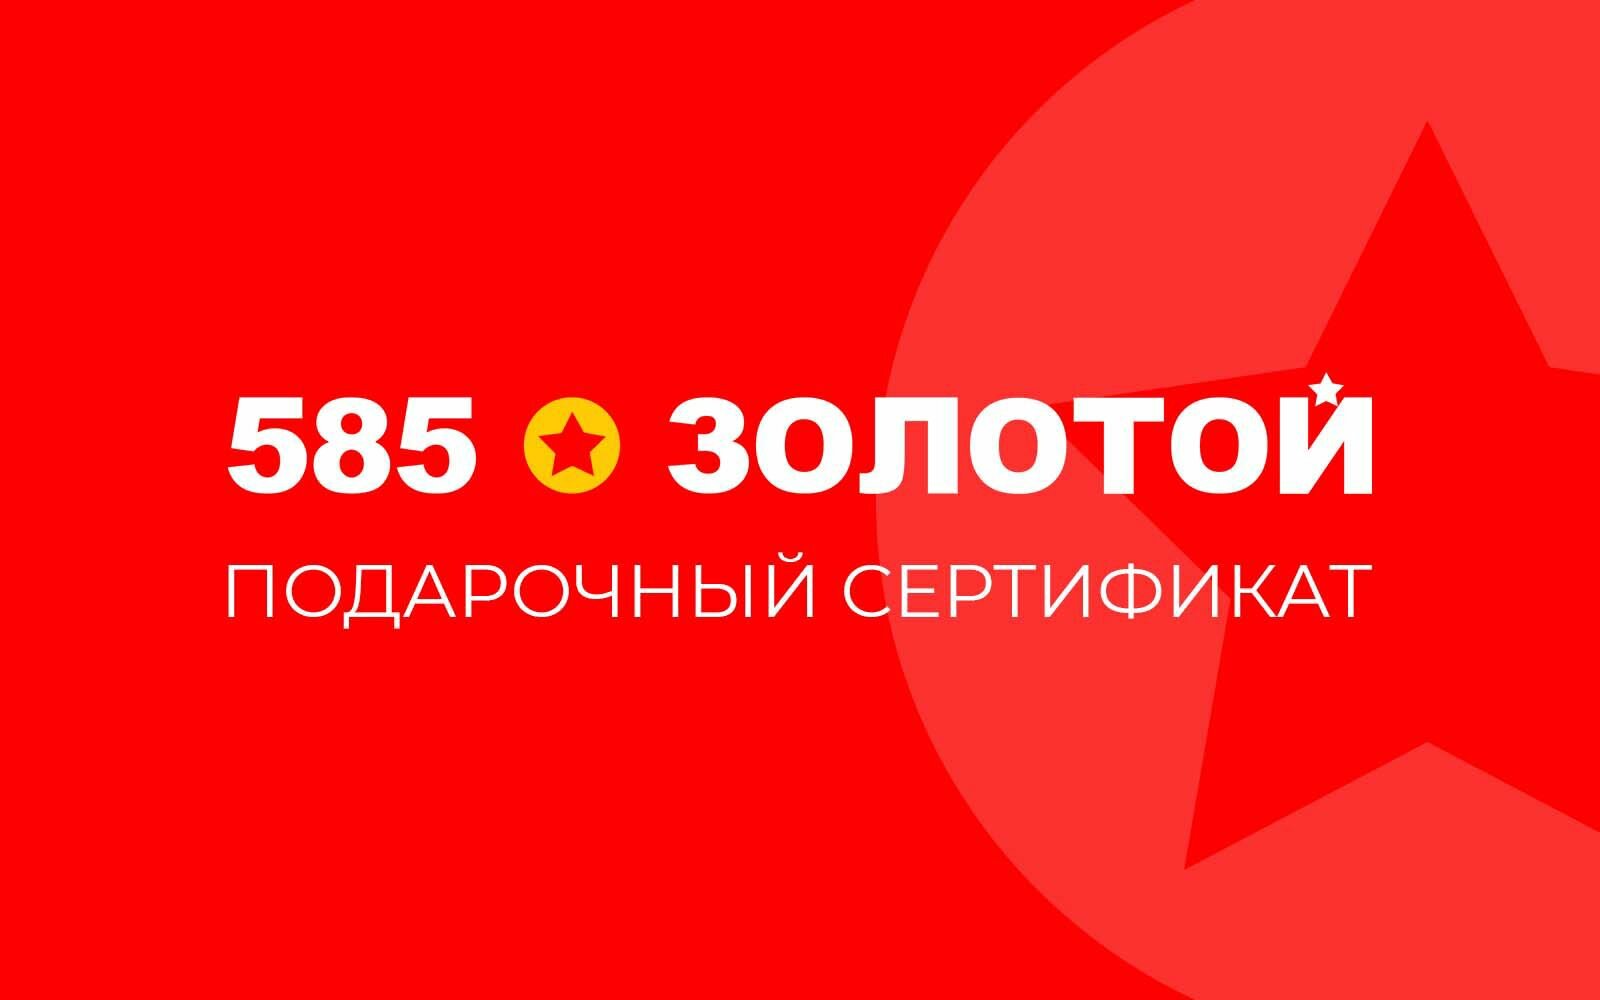 Электронный подарочный сертификат 585 Золотой на 1000р.